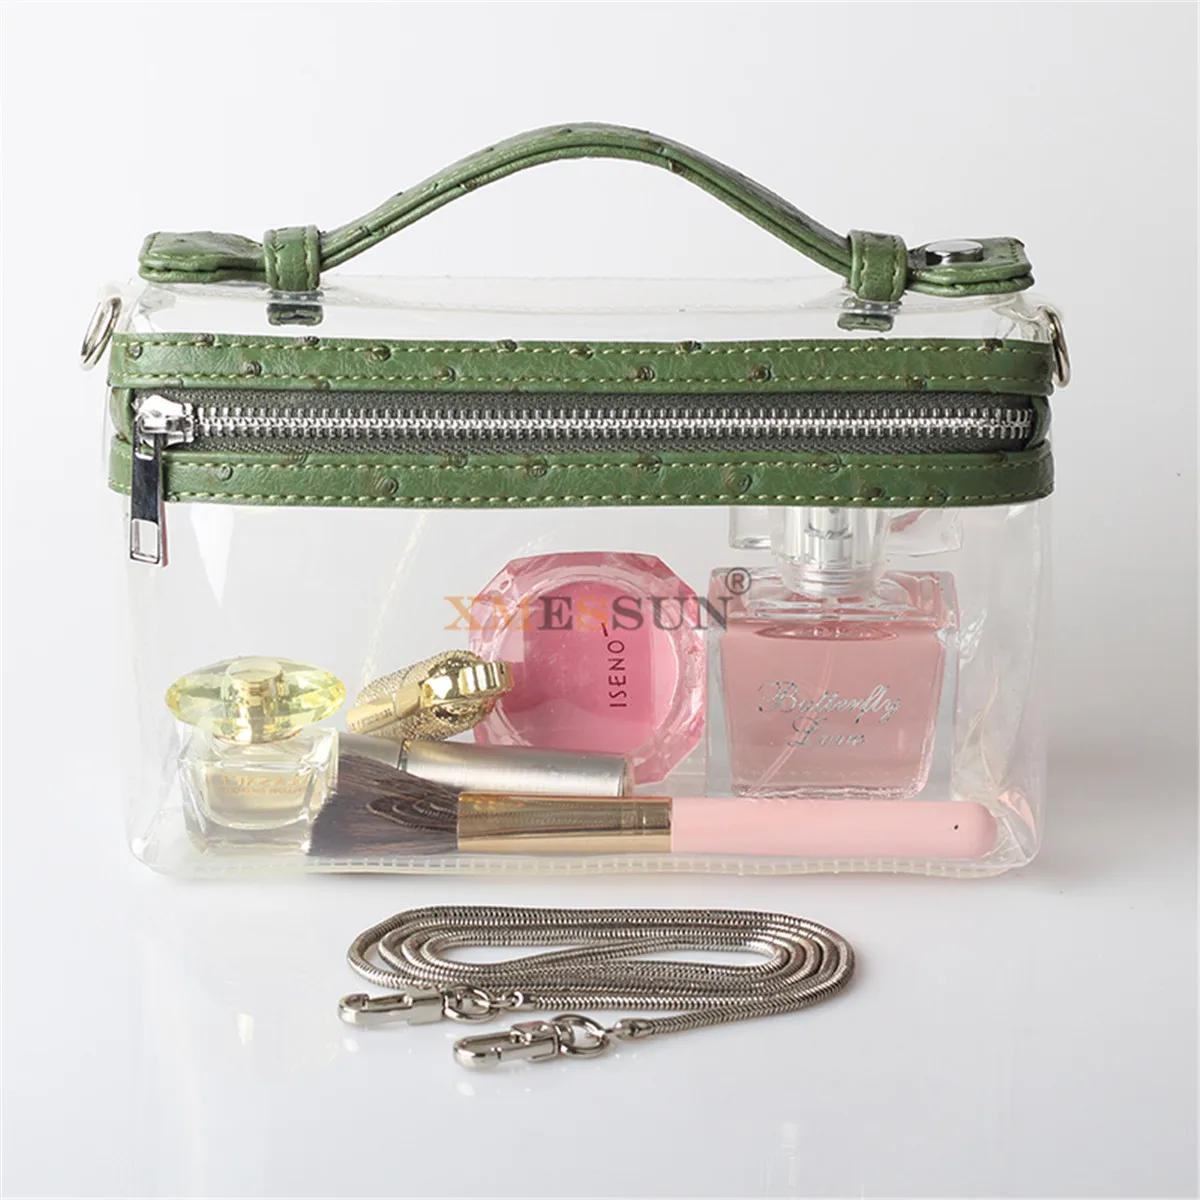 XMESSUN прозрачная сумка, сумка через плечо, тисненая Страусиная женская сумка-клатч, роскошная дизайнерская сумка, модная сумка - Цвет: Ostrich Green(5)